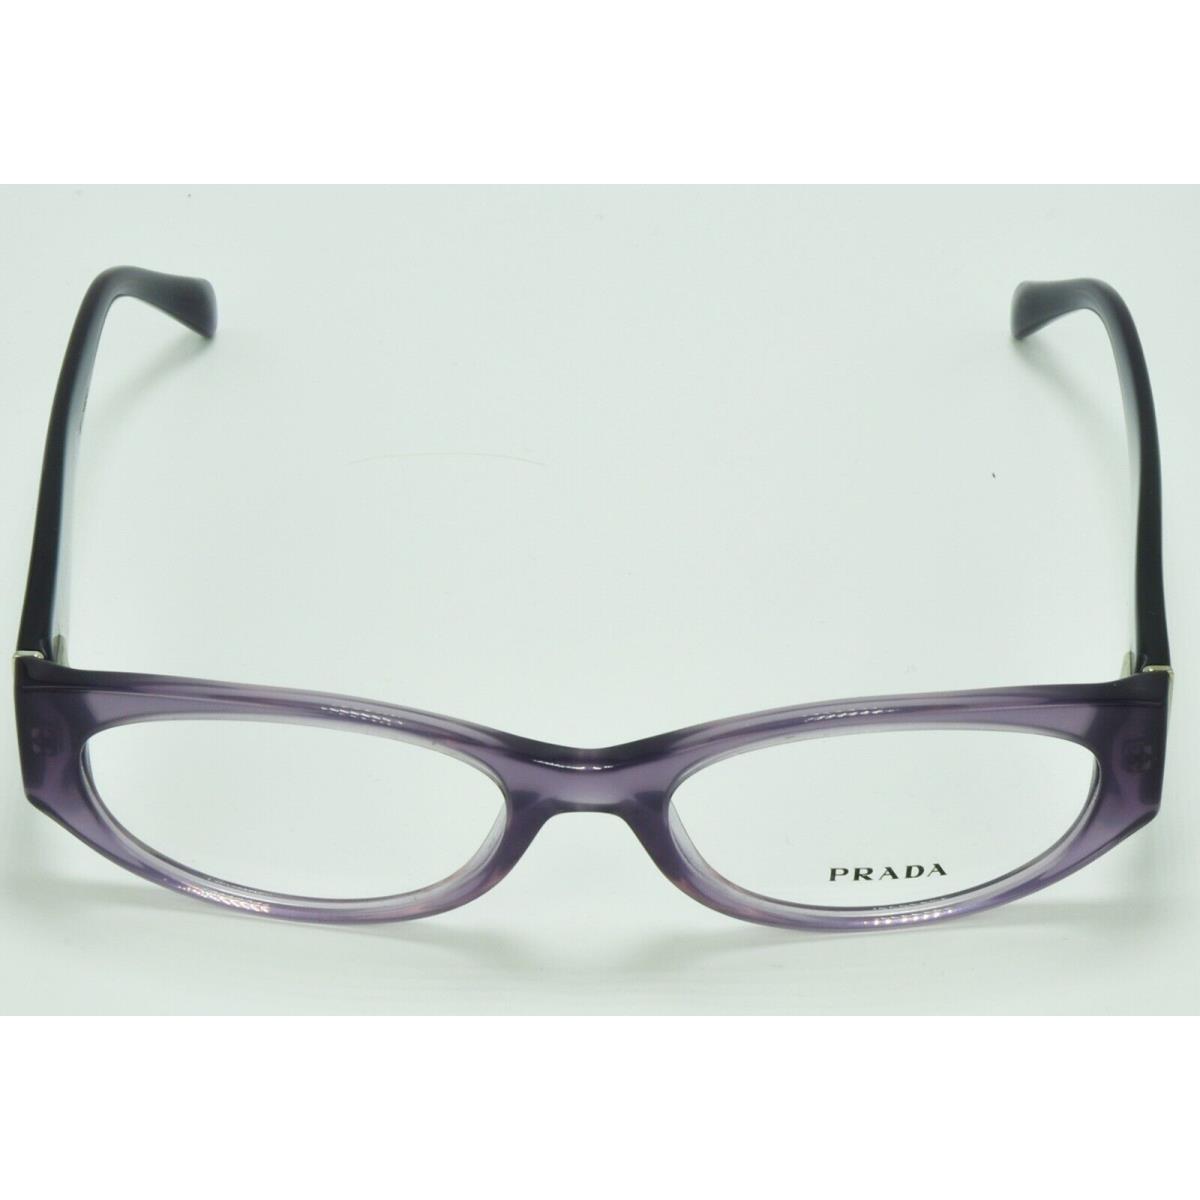 Prada eyeglasses  - Light Purple , Light Purple Frame 4